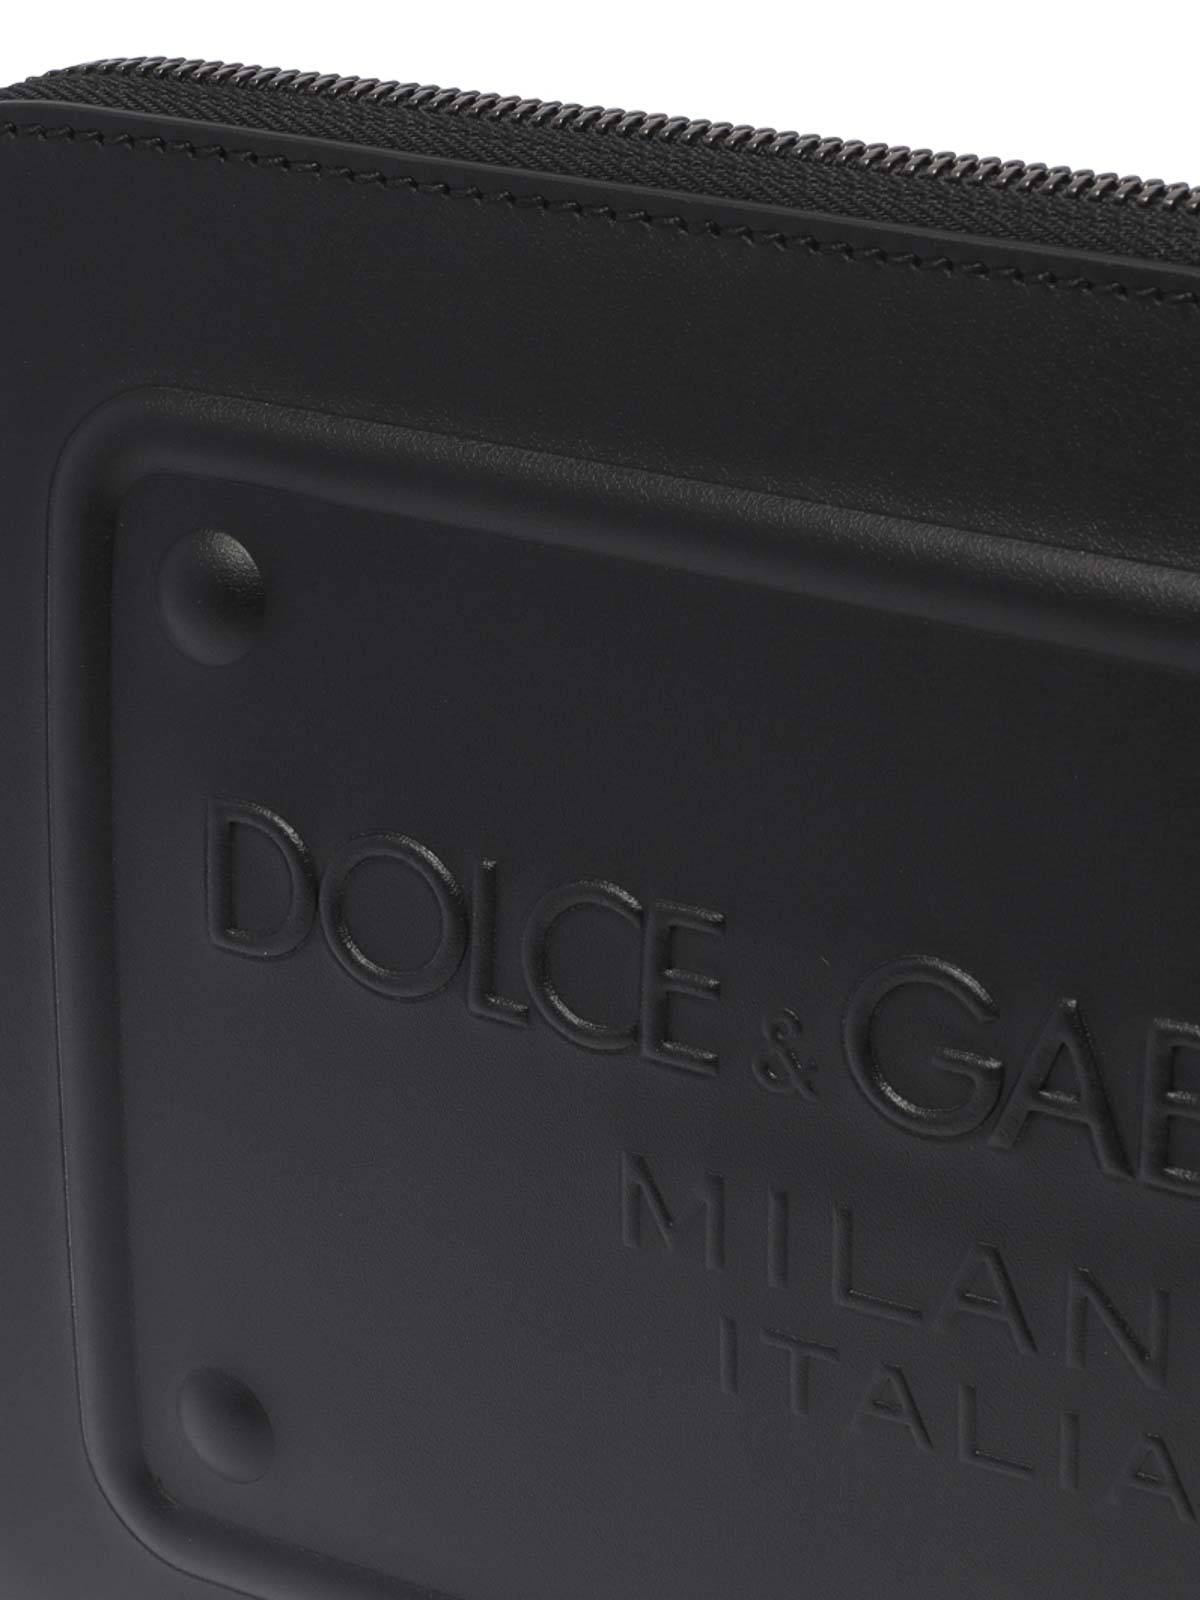 クラッチバッグ Dolce & Gabbana - クラッチバッグ - 黒